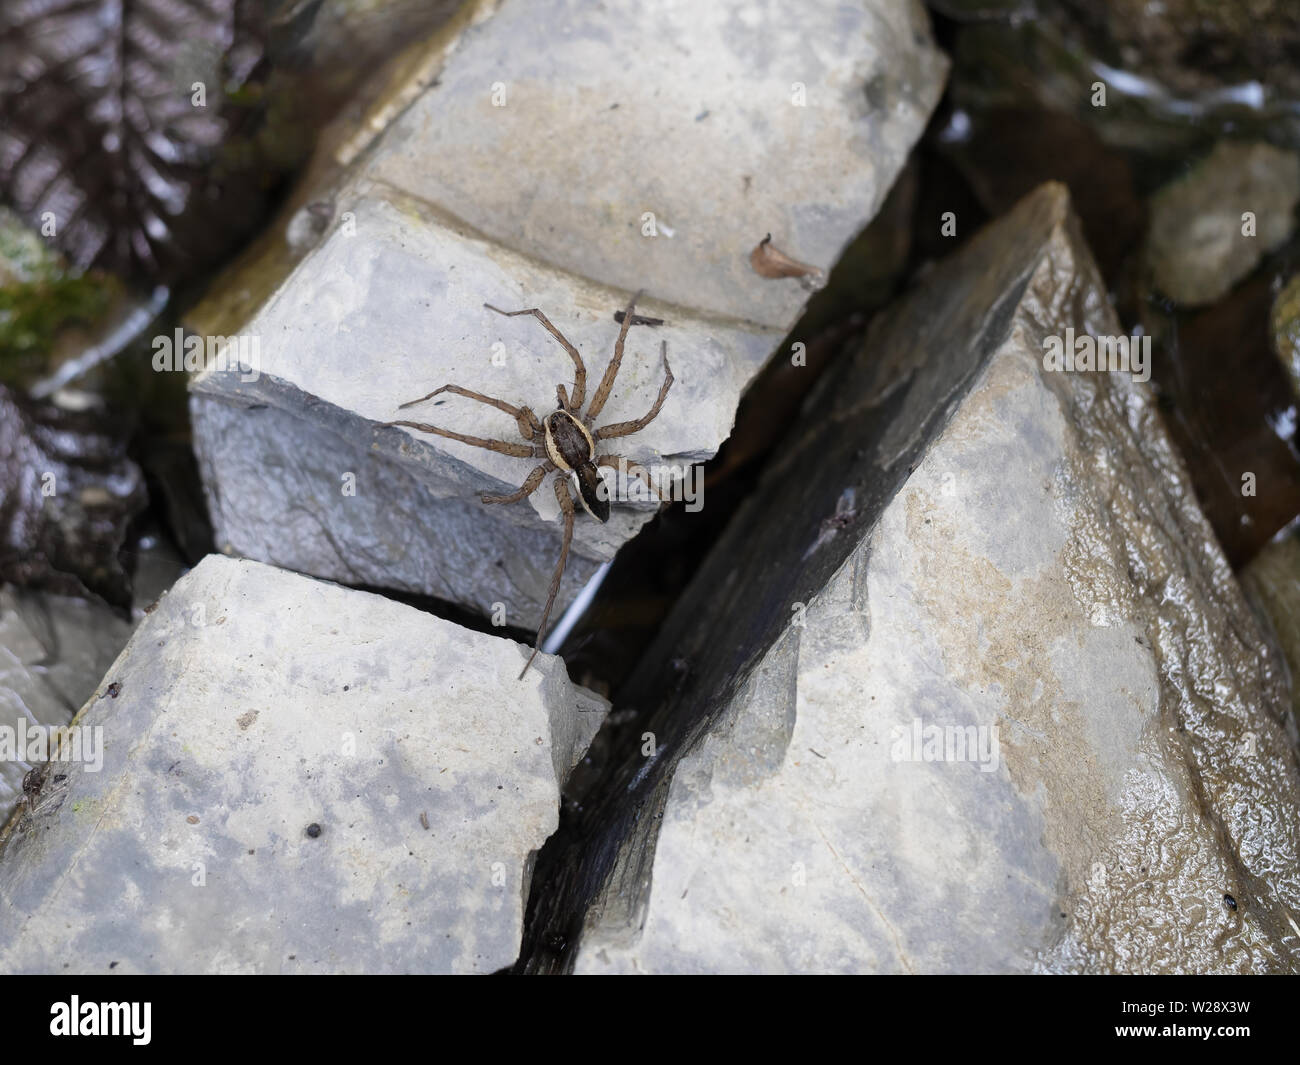 Araña Dolomedes sobre piedra en stream con pierna en agua 'pesca'. Comúnmente conocida como la pesca, balsa, Dock o wharf arañas Foto de stock